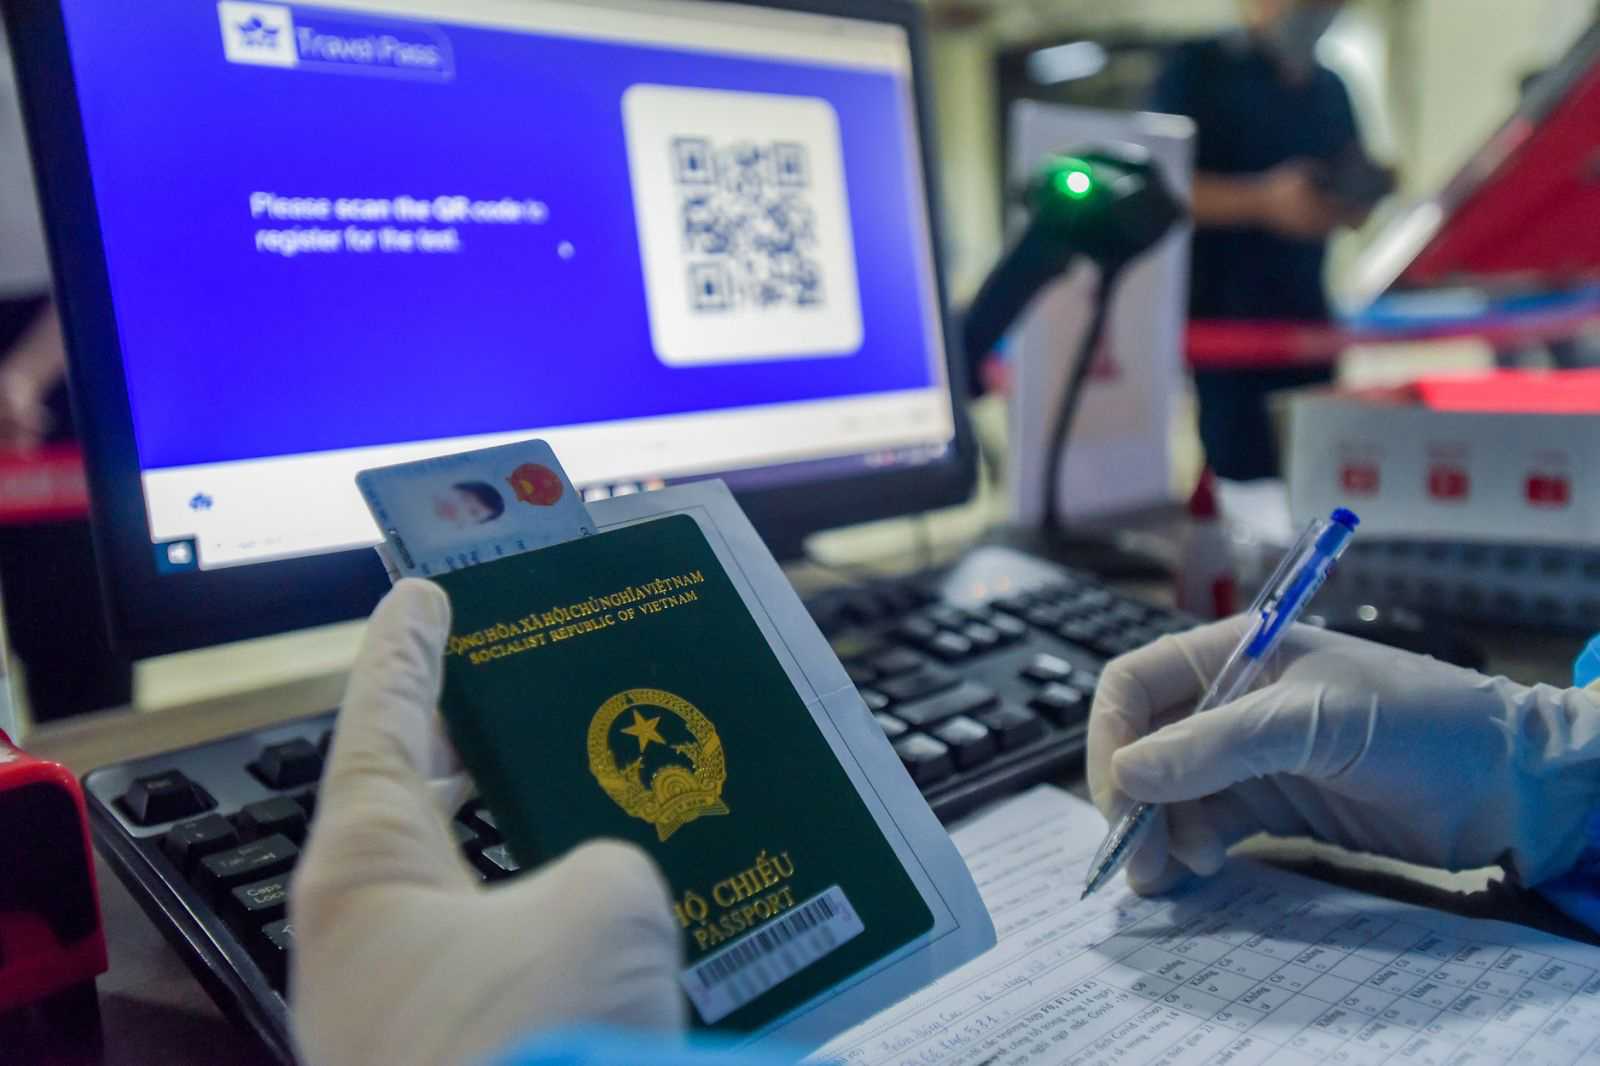 hành khách thông báo với nhân viên y tế về việc tham gia thử nghiệm IATA Travel Pass và xuất trình vé điện tử cùng xác nhận đặt chỗ trên chuyến bay của Vietnam Airlines